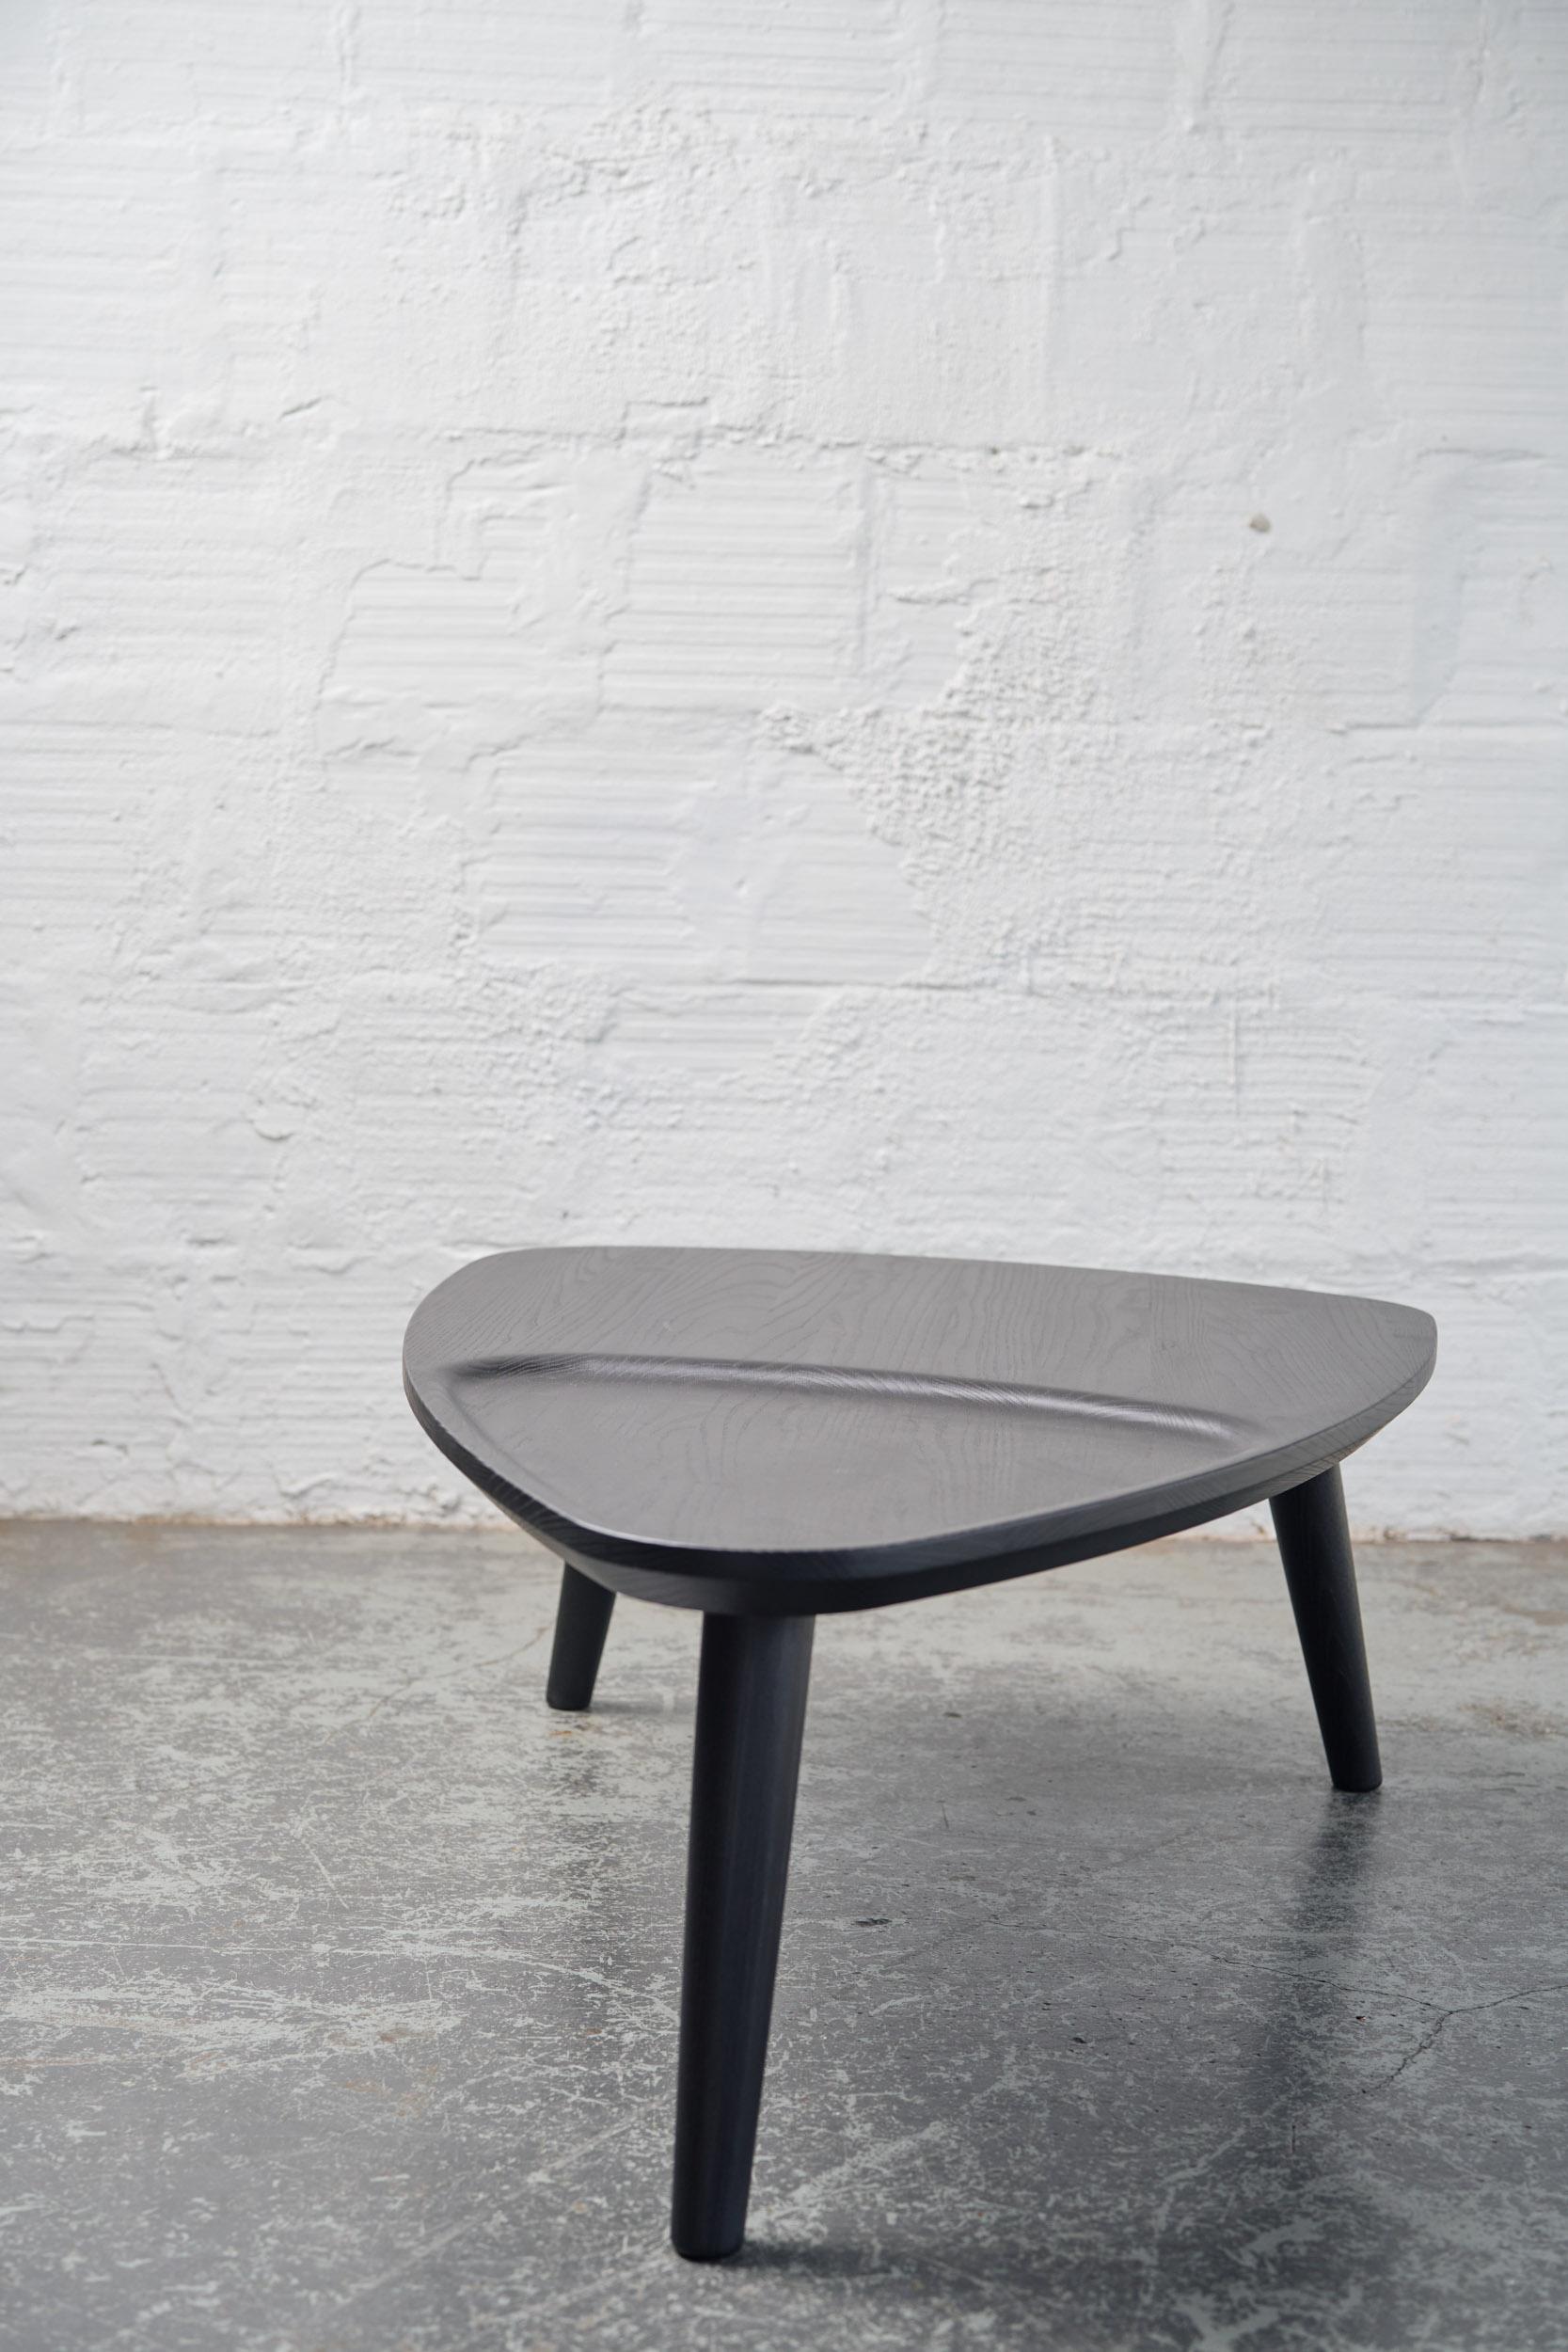 Dans le prolongement de la collection Oxbend, nous vous présentons la table basse Oxbend. 

Le design du banc et des chaises Design/One est étendu à la table, en suivant le tenon déligné à la main et les courbes organiques. Cette table asymétrique